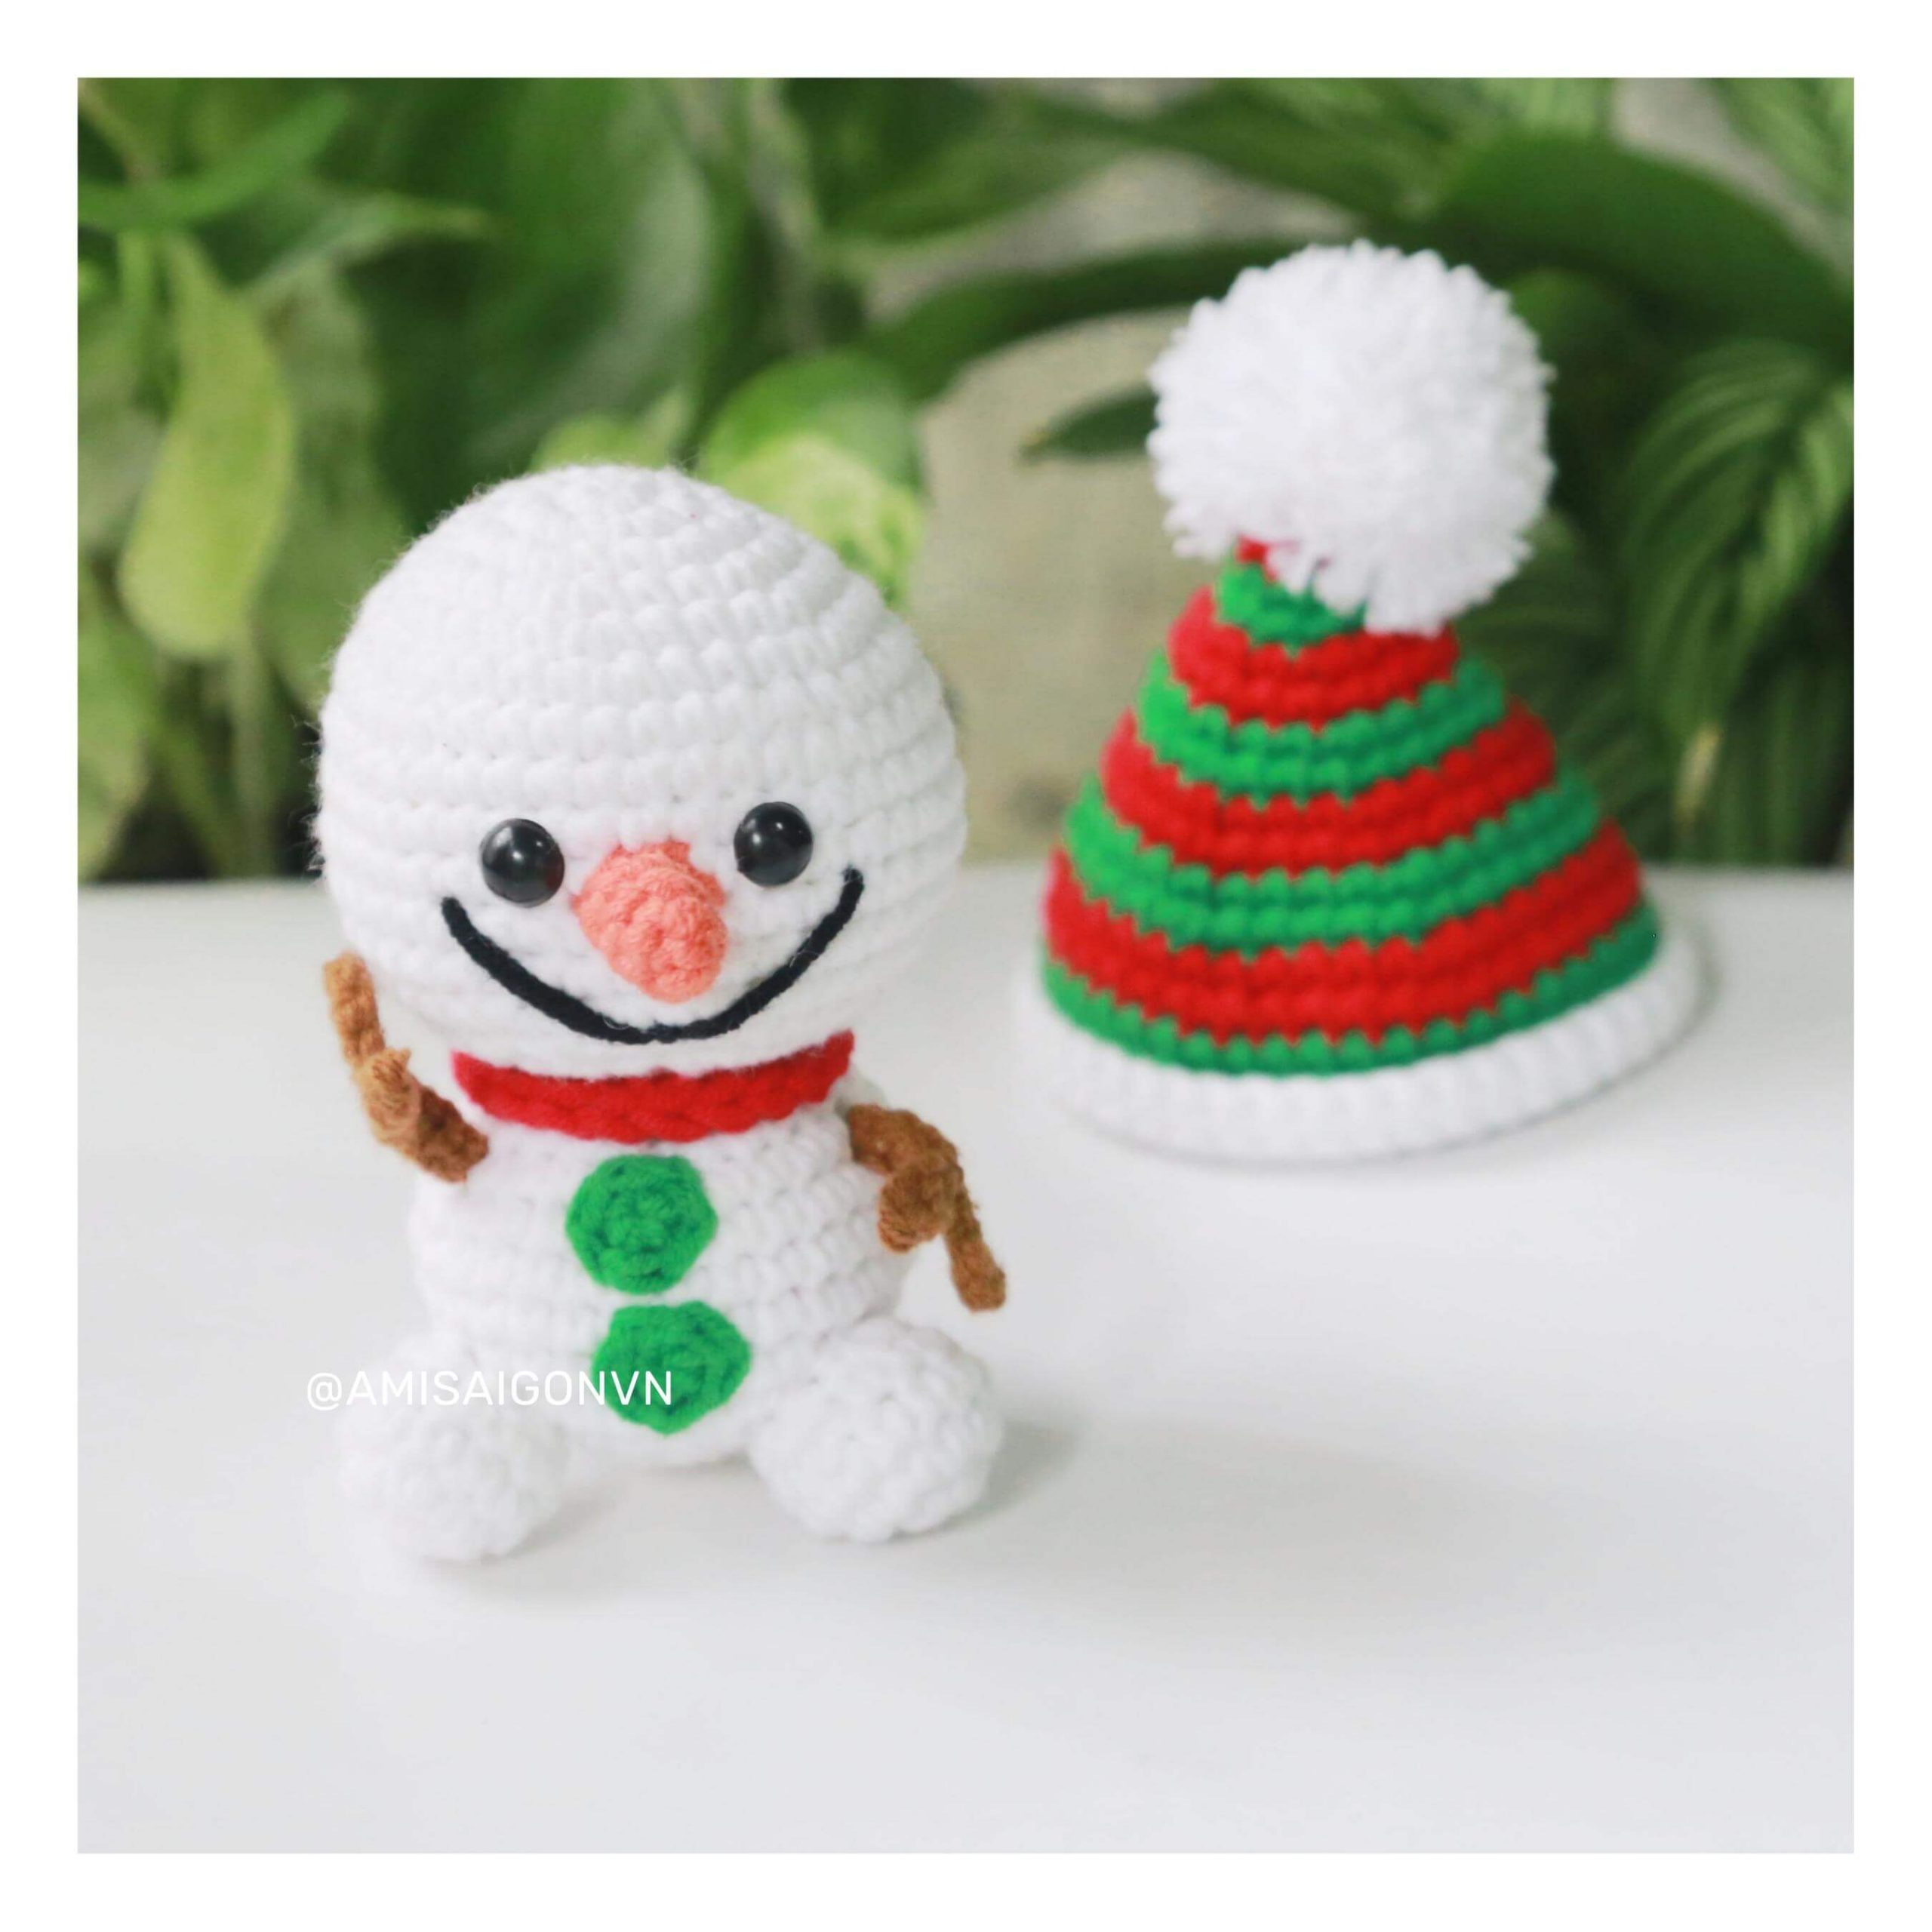 snowman-amigurumi-crochet-pattern-amisaigon (2)